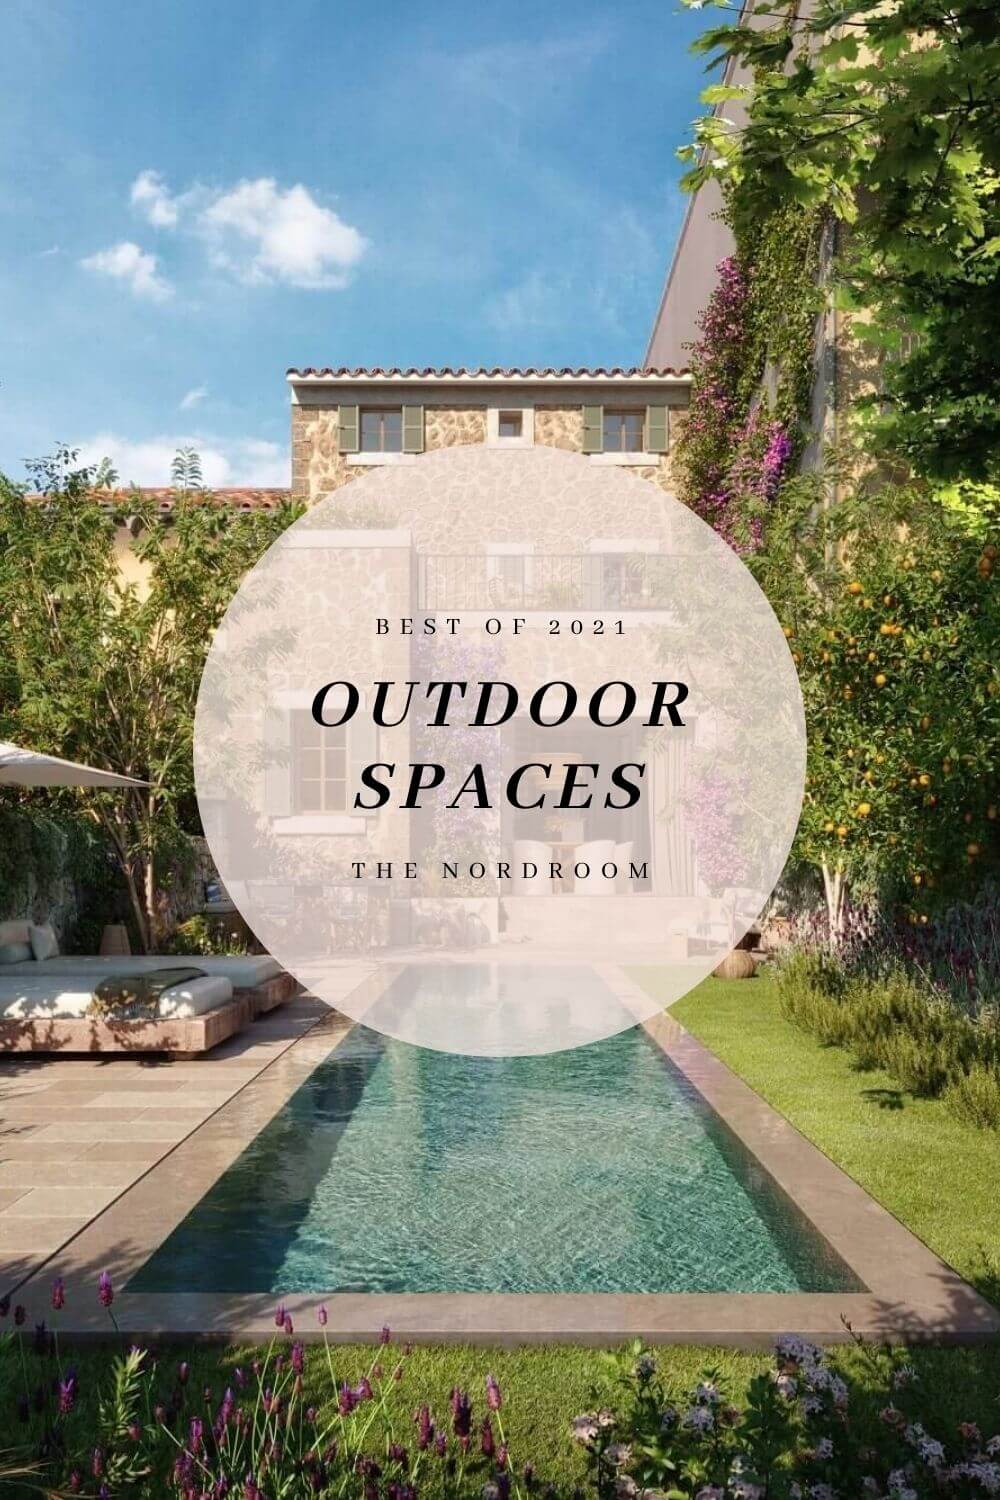 best of 2021 outdoor spaces nordroom Best of 2021: Outdoor Spaces